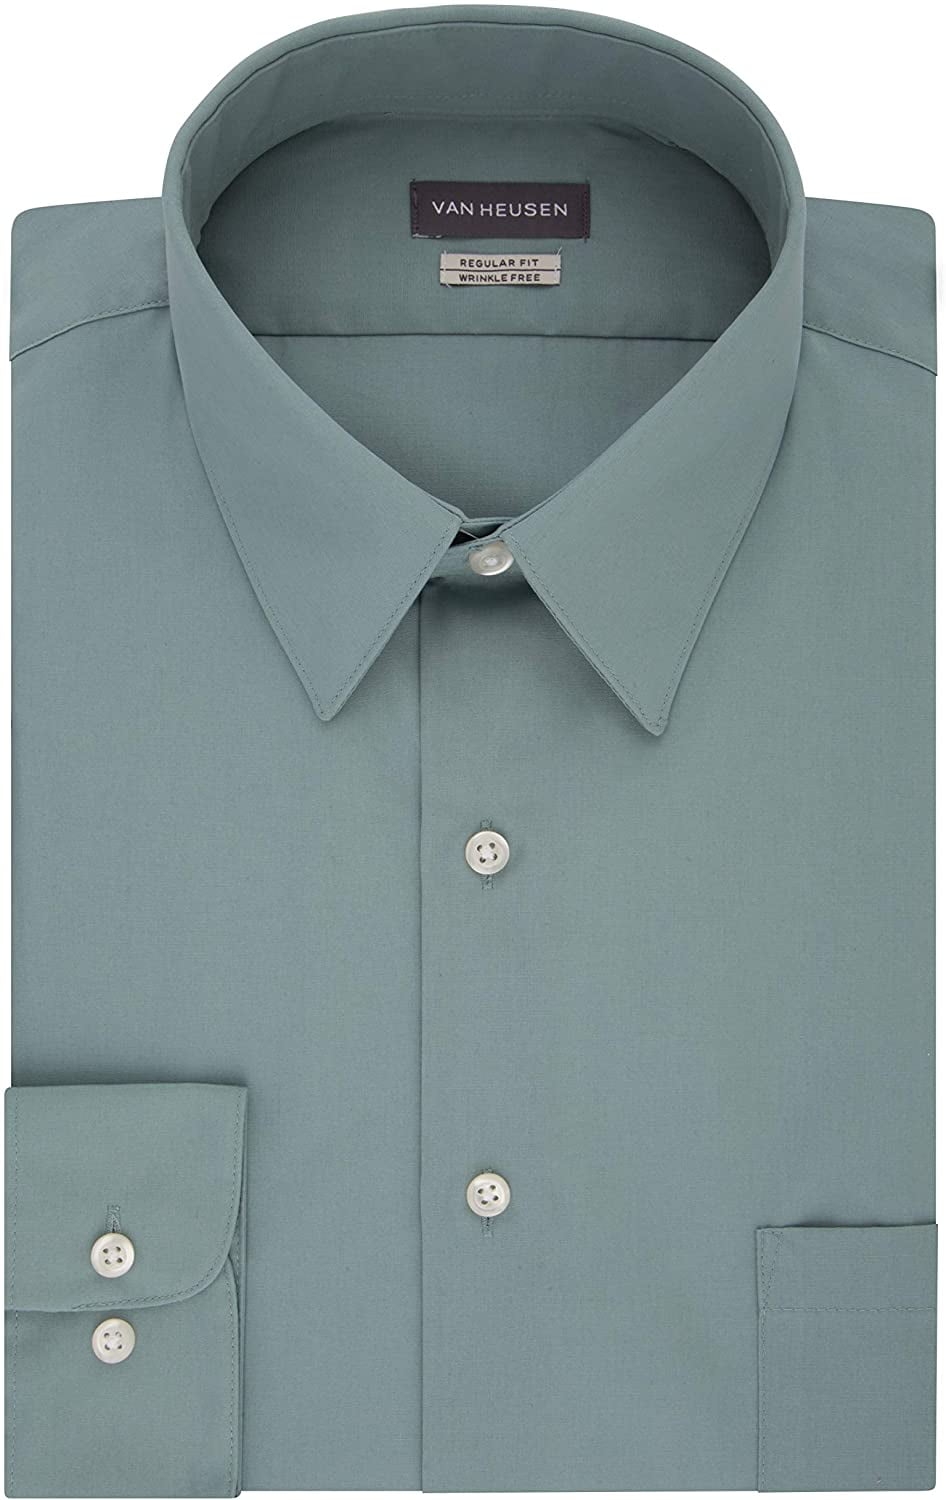 Van Heusen Men's Shirt Regular Fit Poplin Solid 